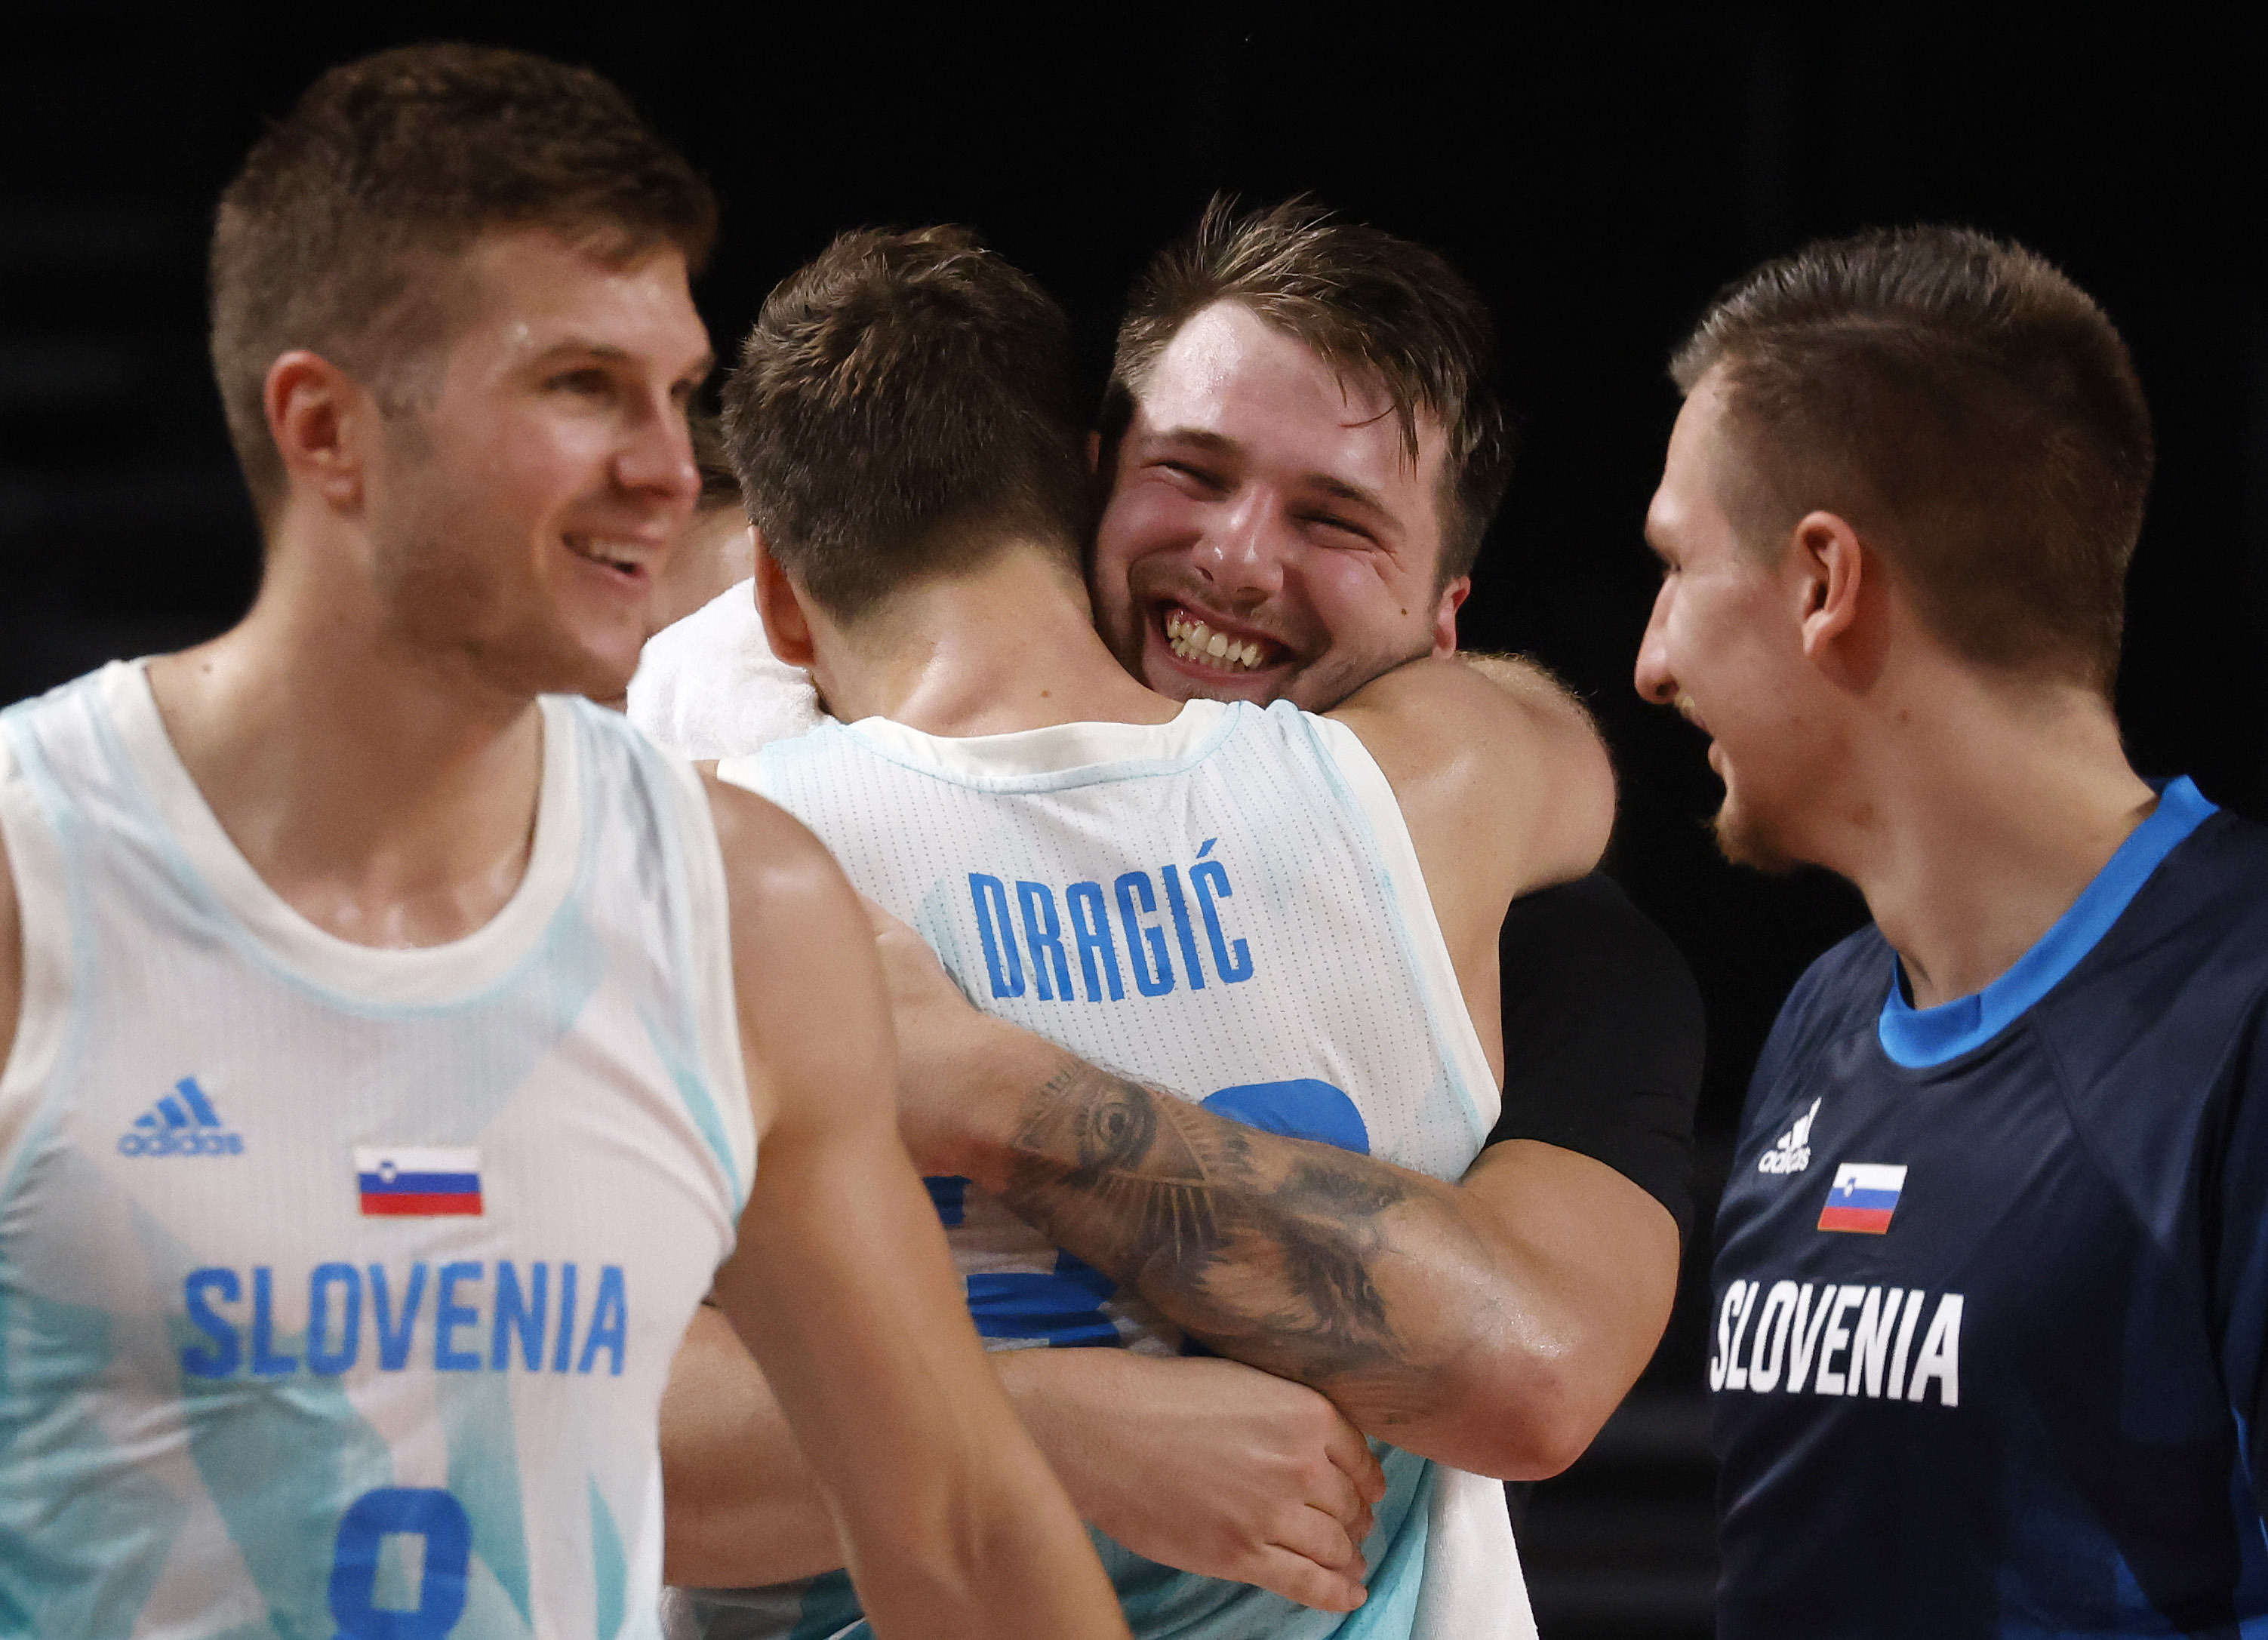 Goran Dragic helps power Slovenia past Spain to advance to EuroBasket  championship